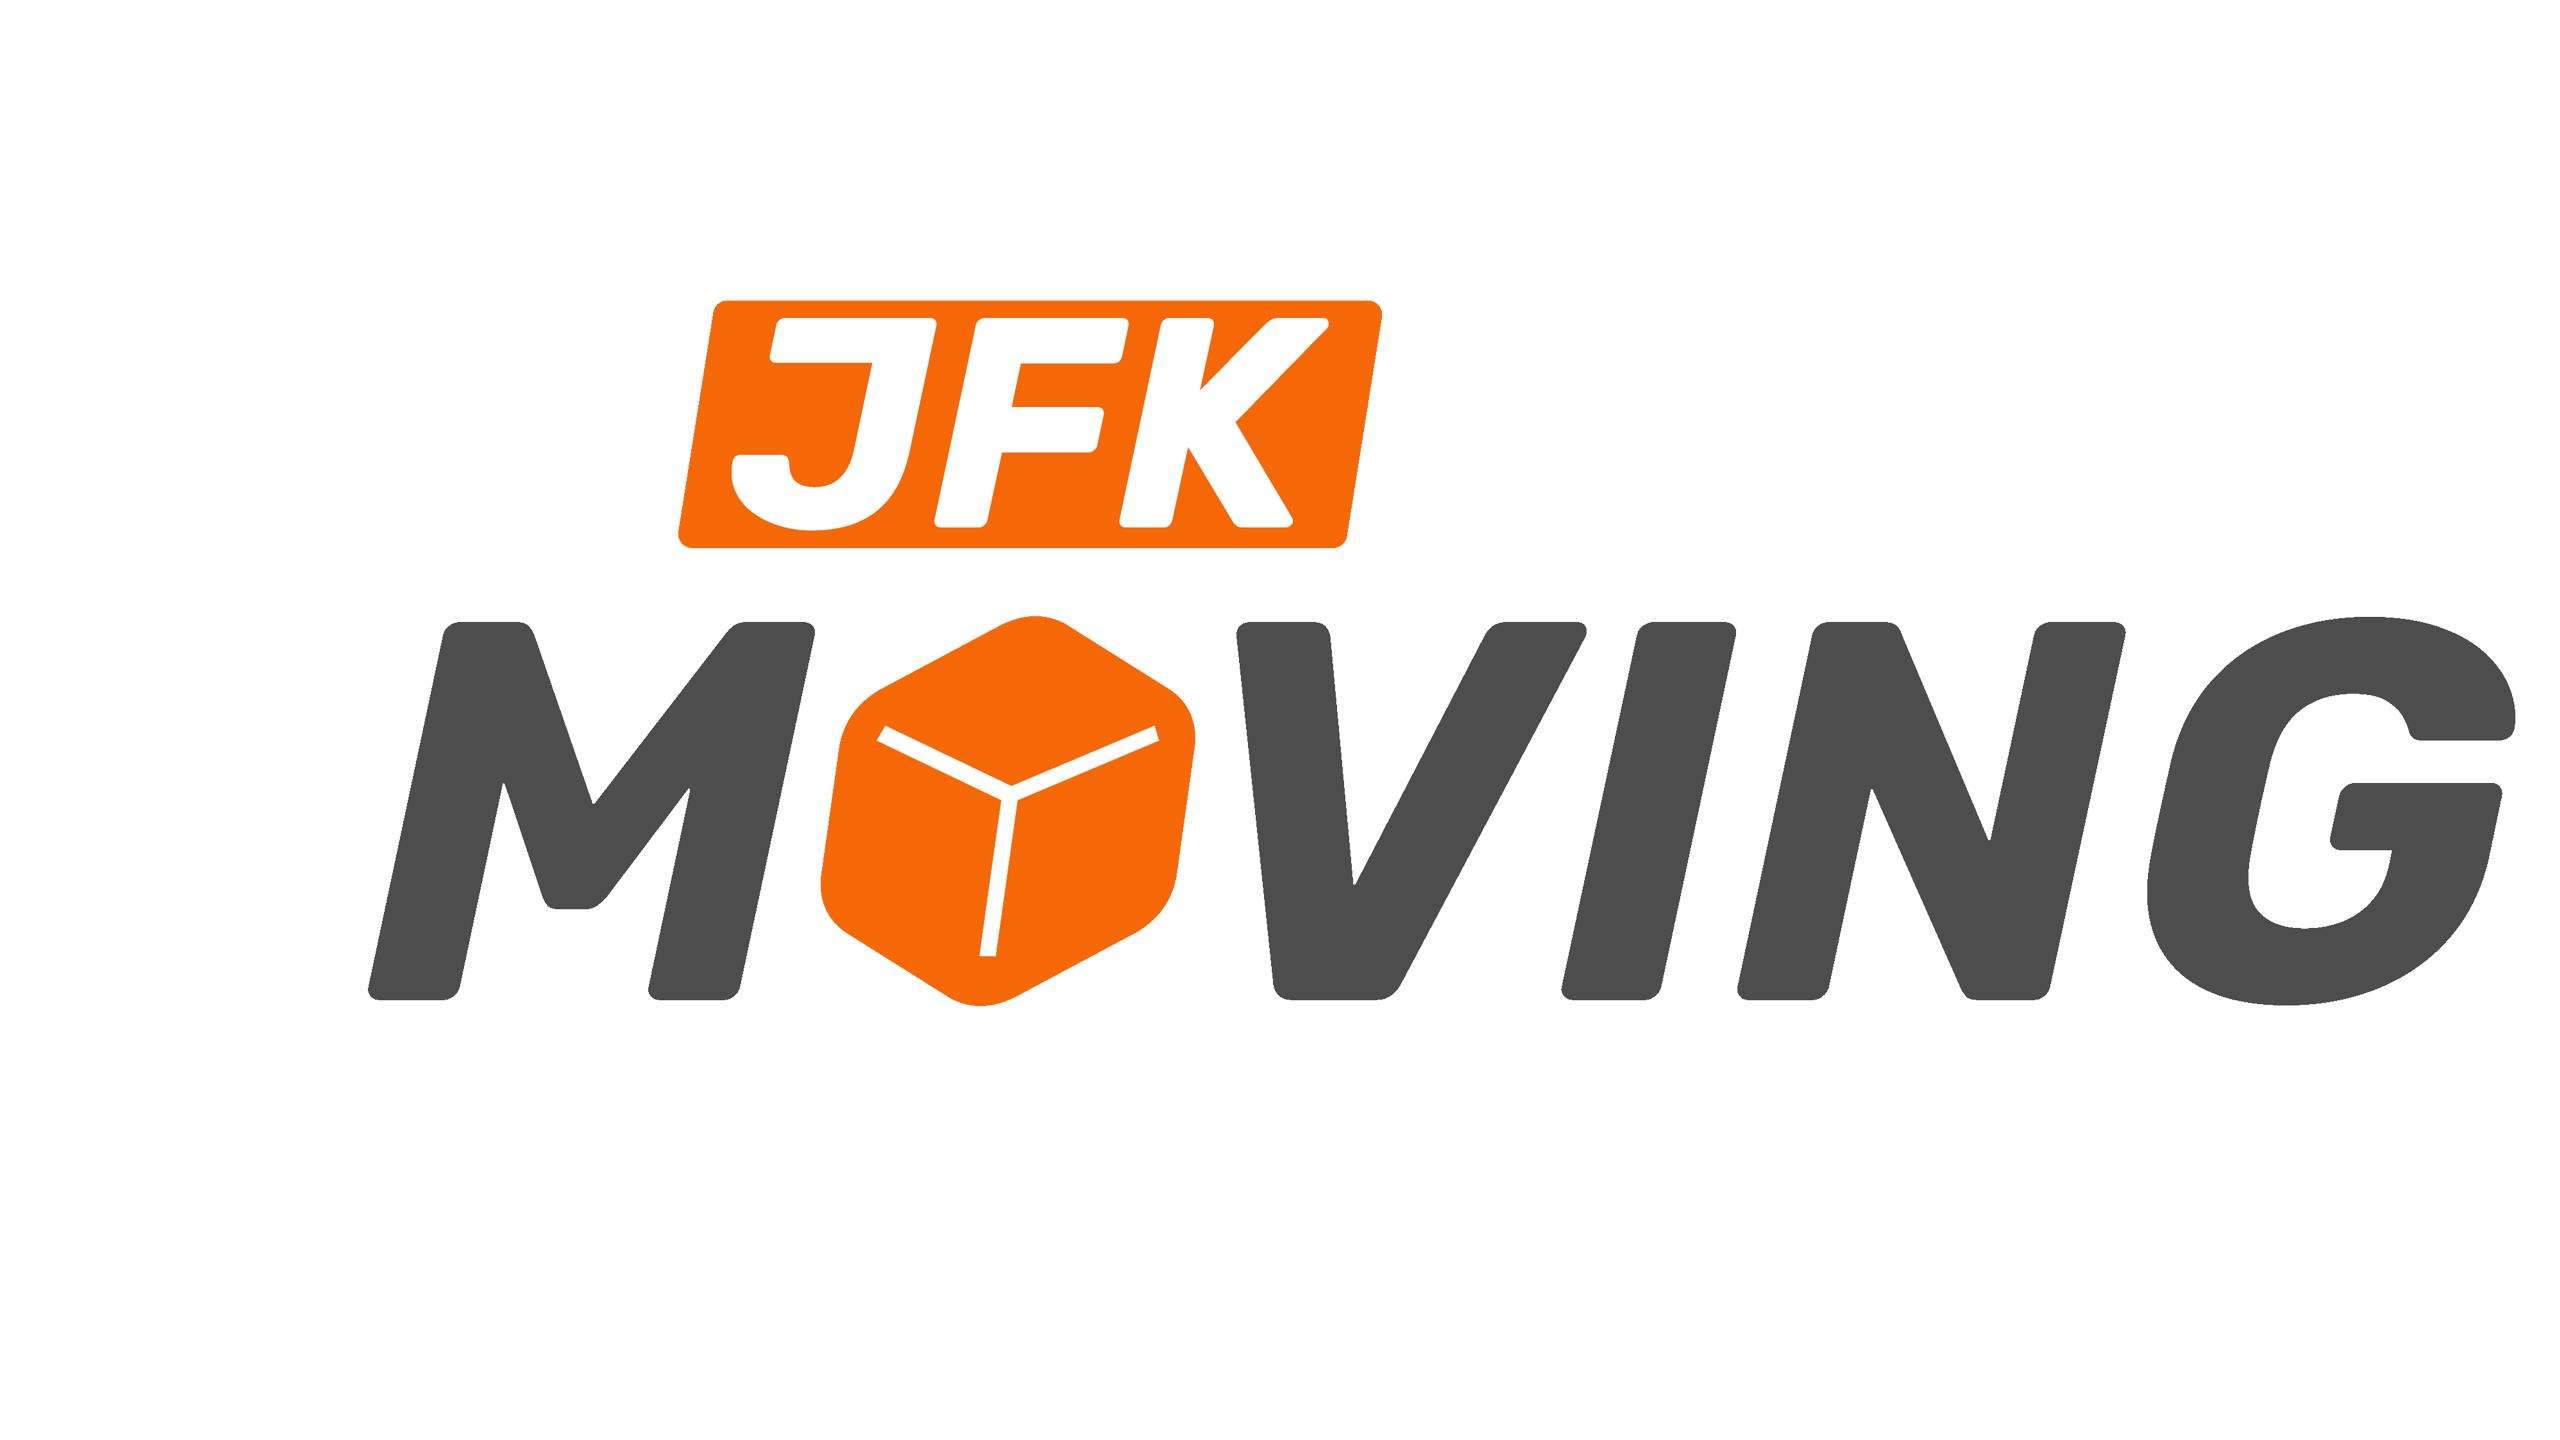 JFK Moving Company Logo